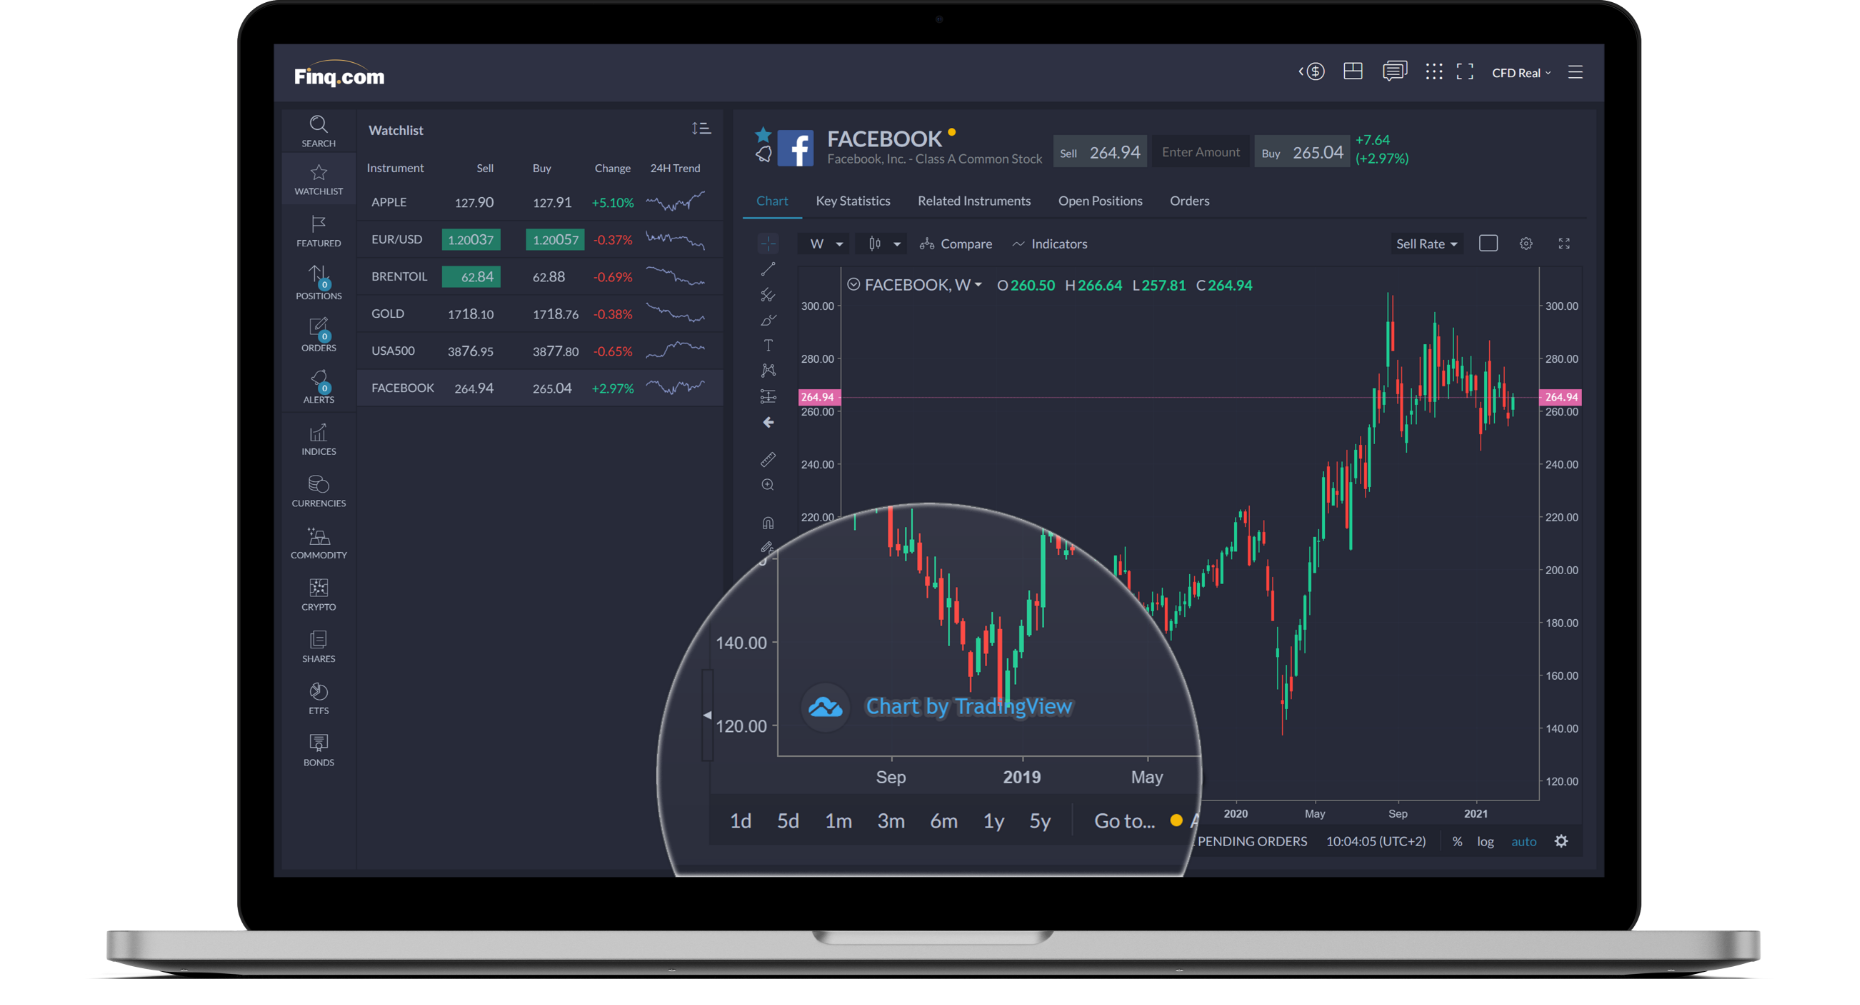 tradingview | Finq.com